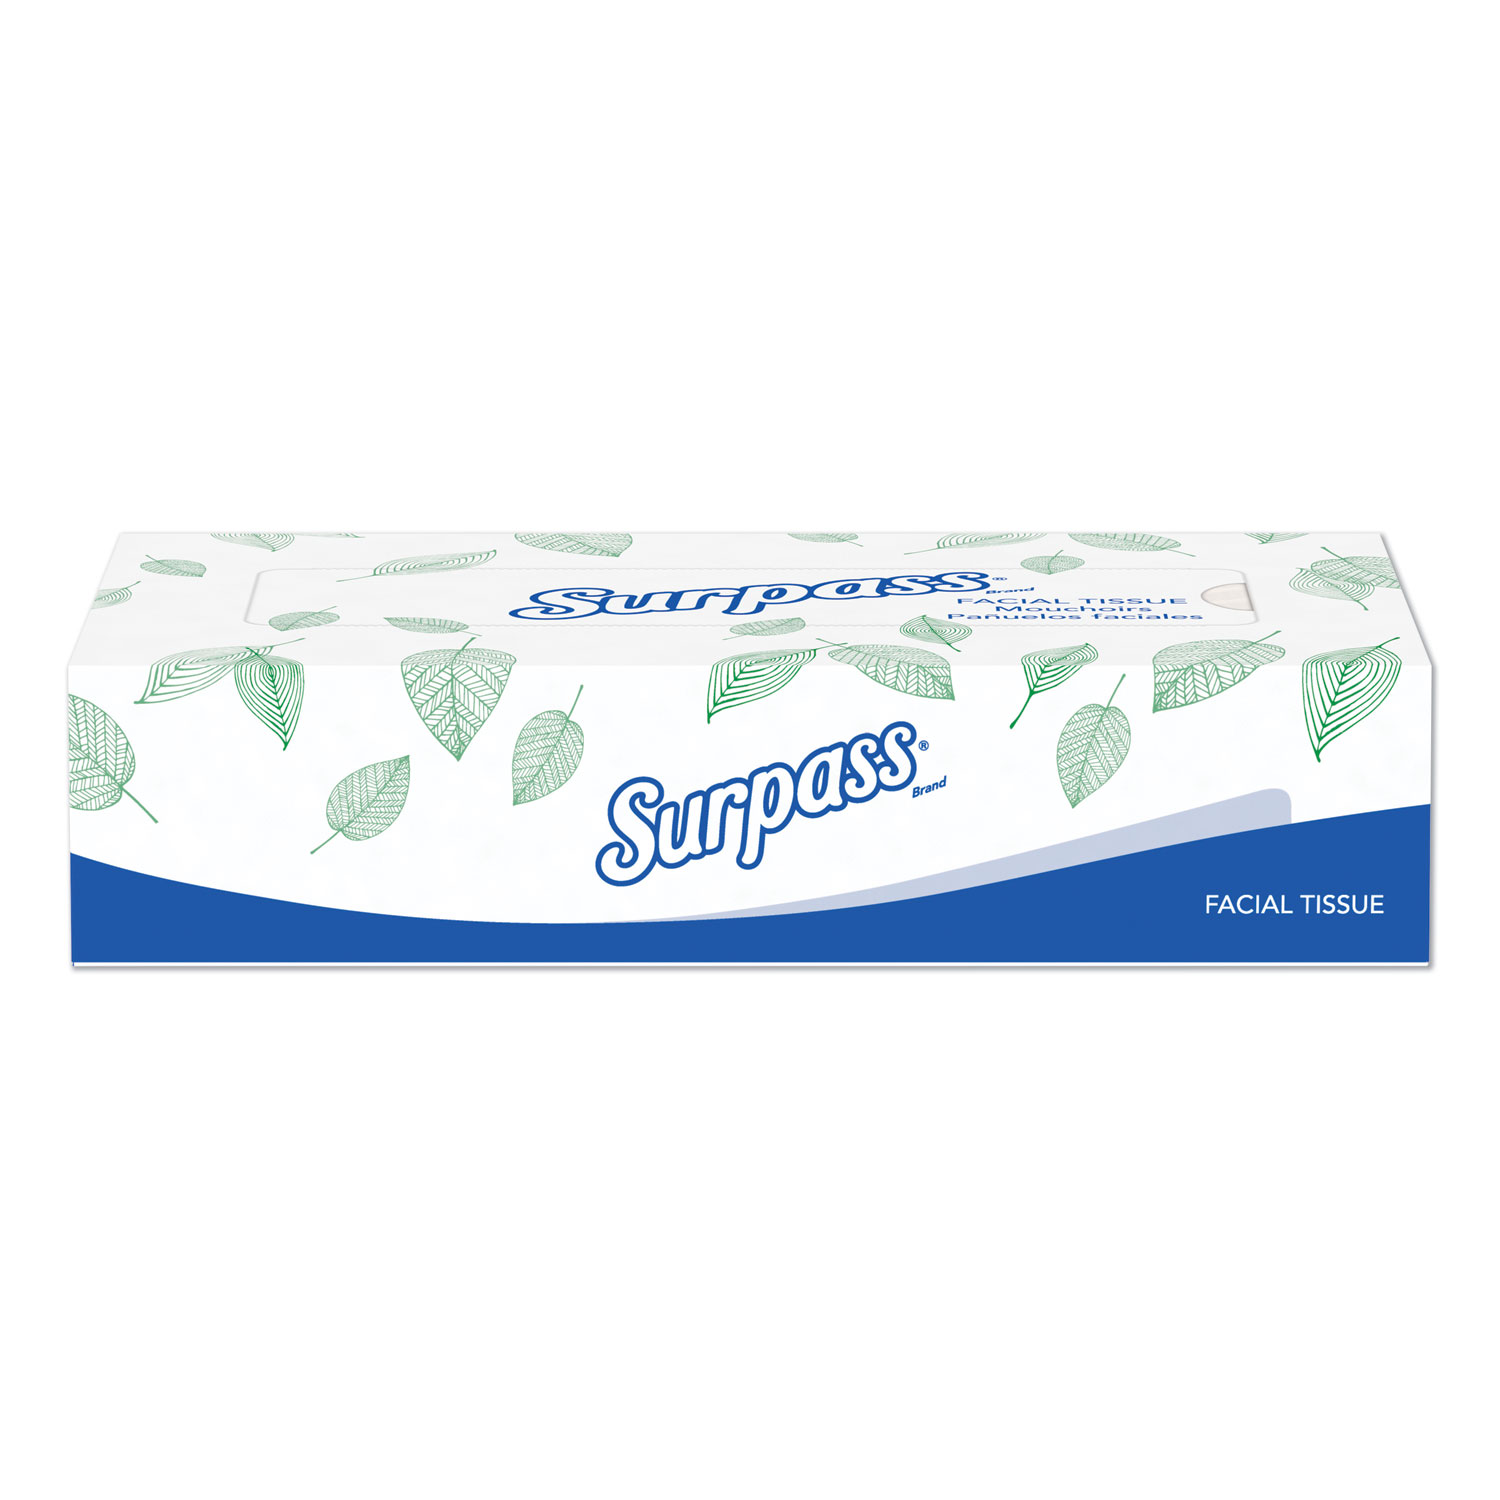 Surpass Facial Tissue, 2-Ply, Flat Box, 100/Box, 30 Boxes/Carton